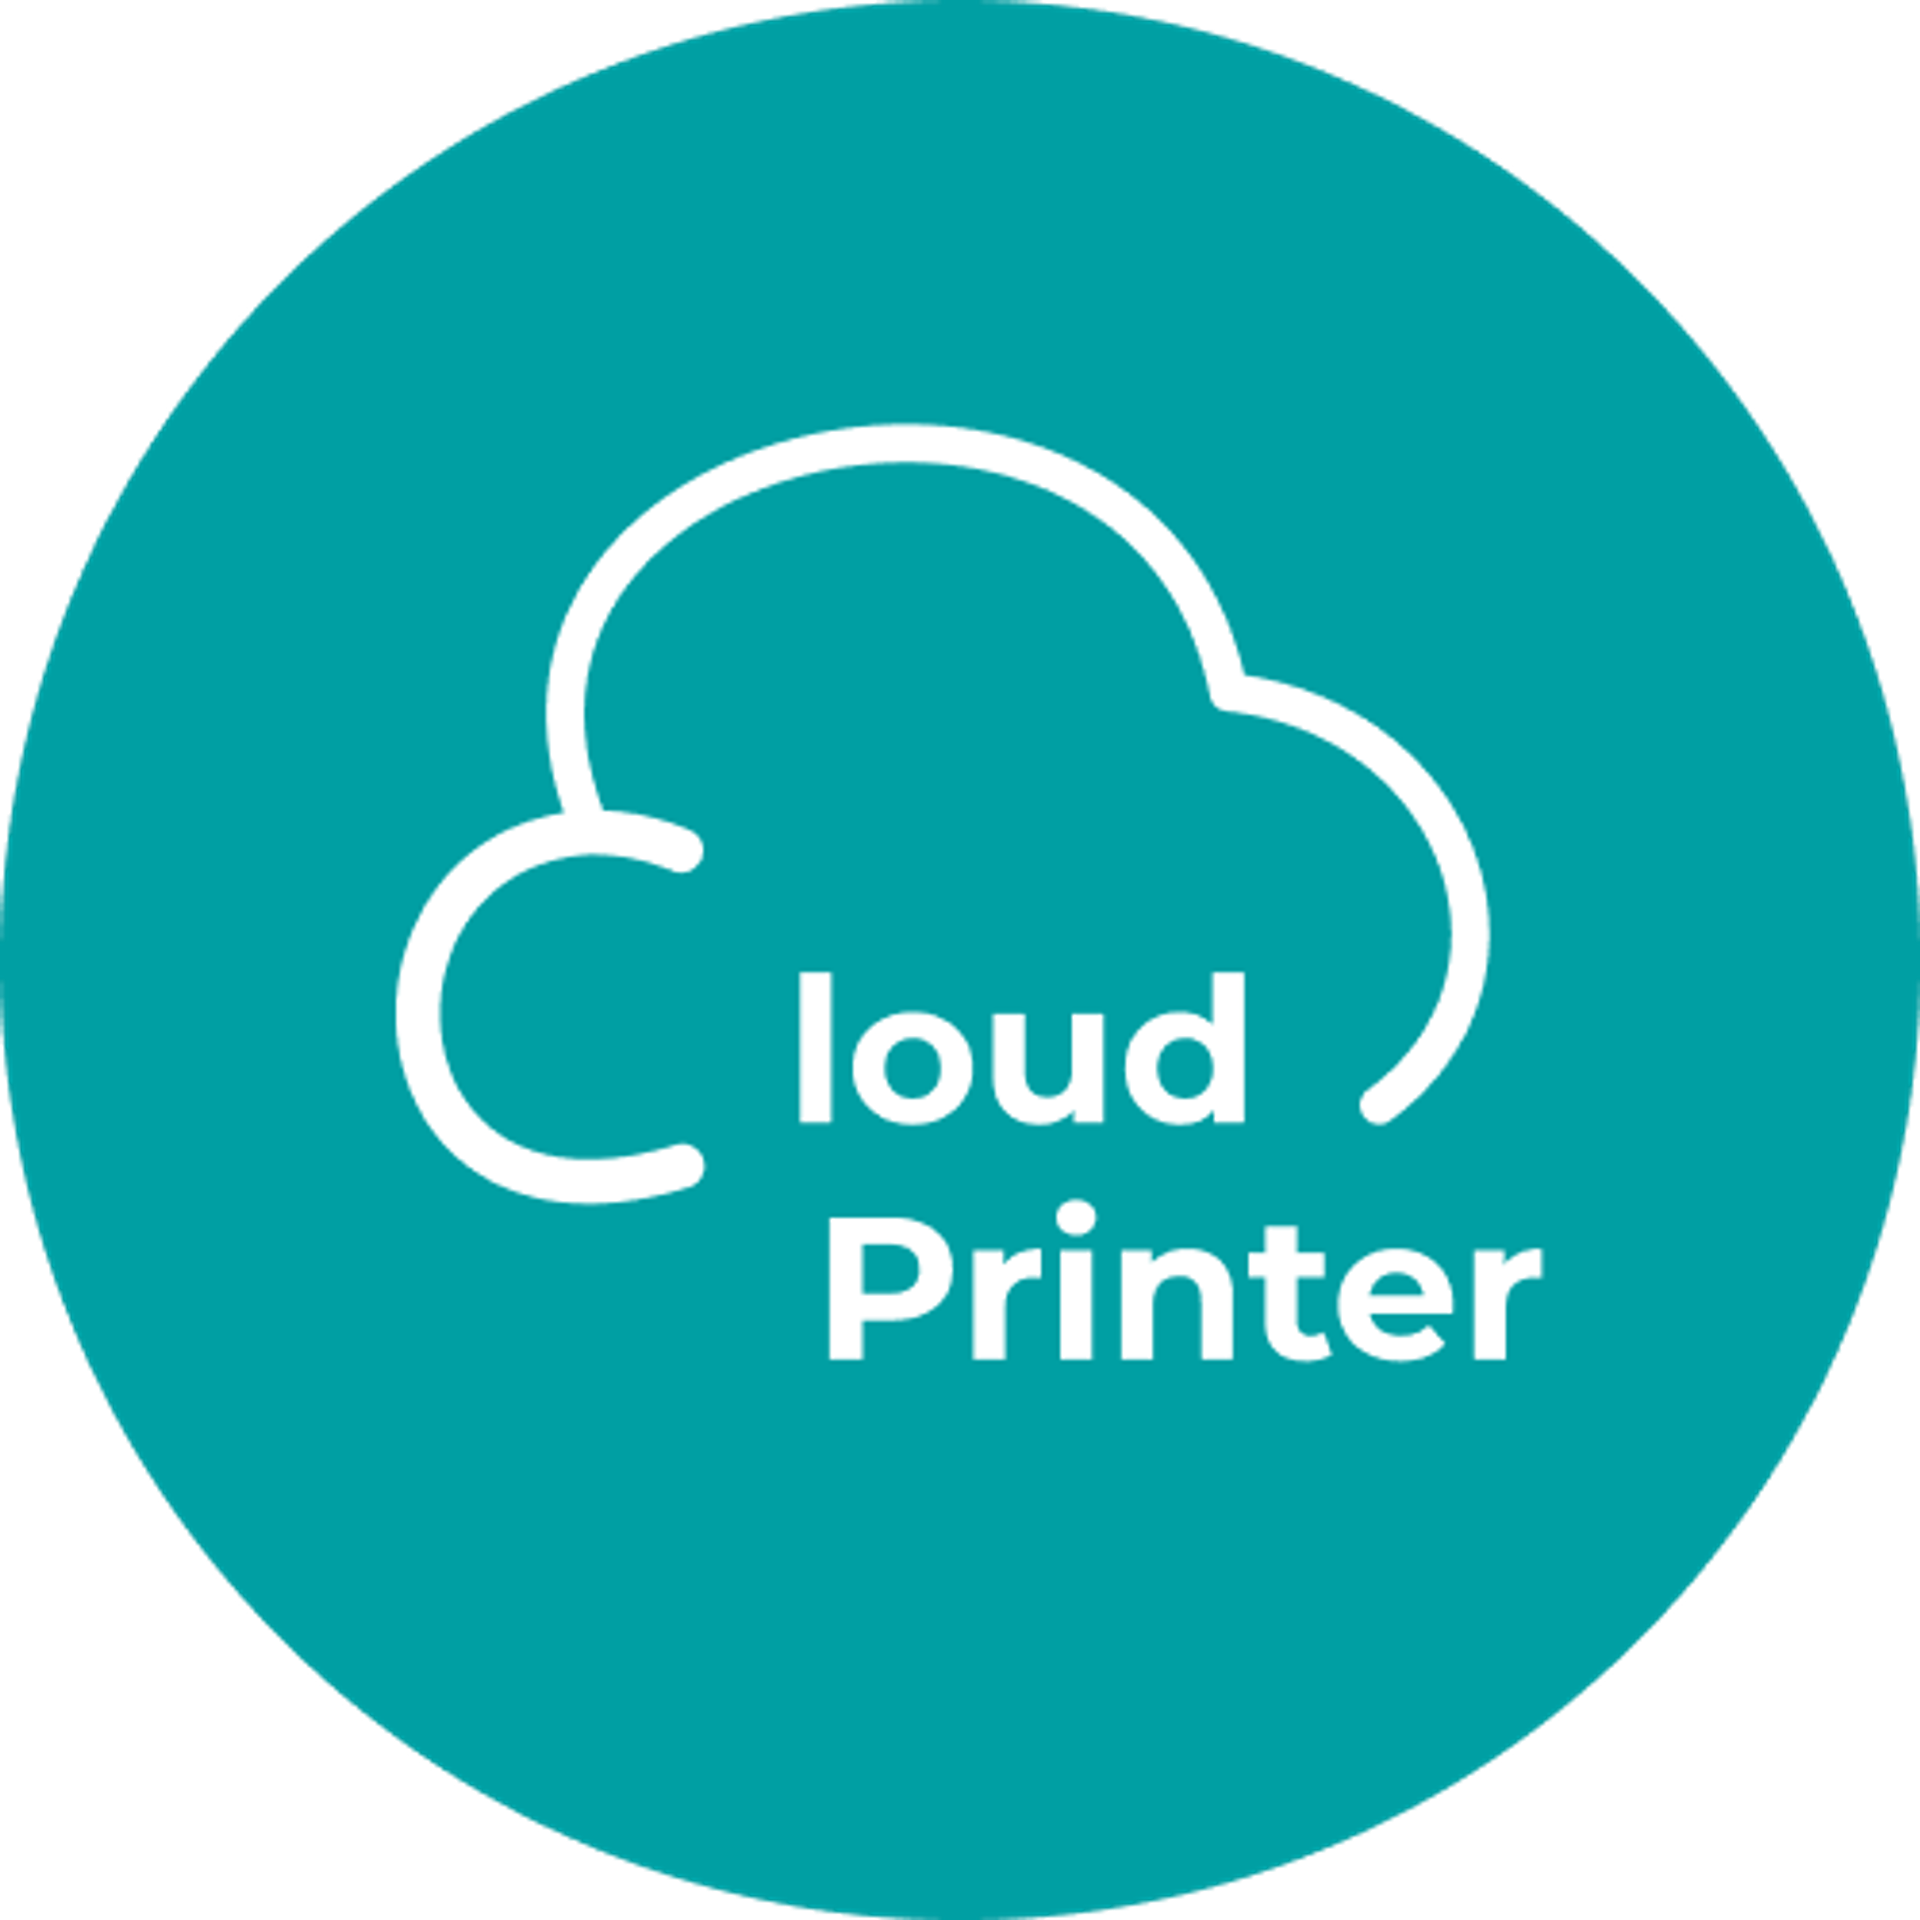 Cloud Printer